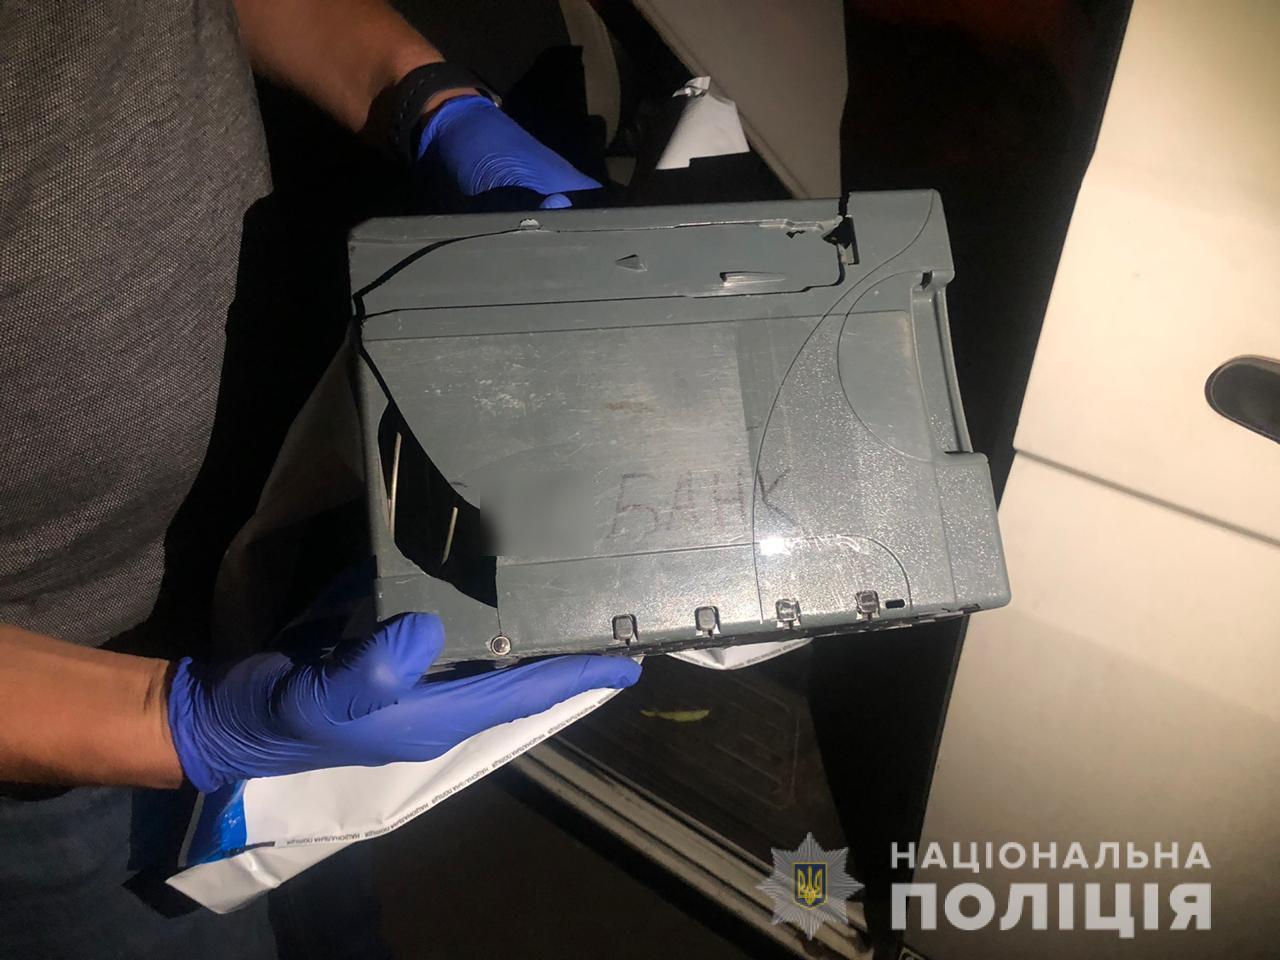 Киевлянин похитил платежный терминал из помещения магазина в Ворзеле (фото)